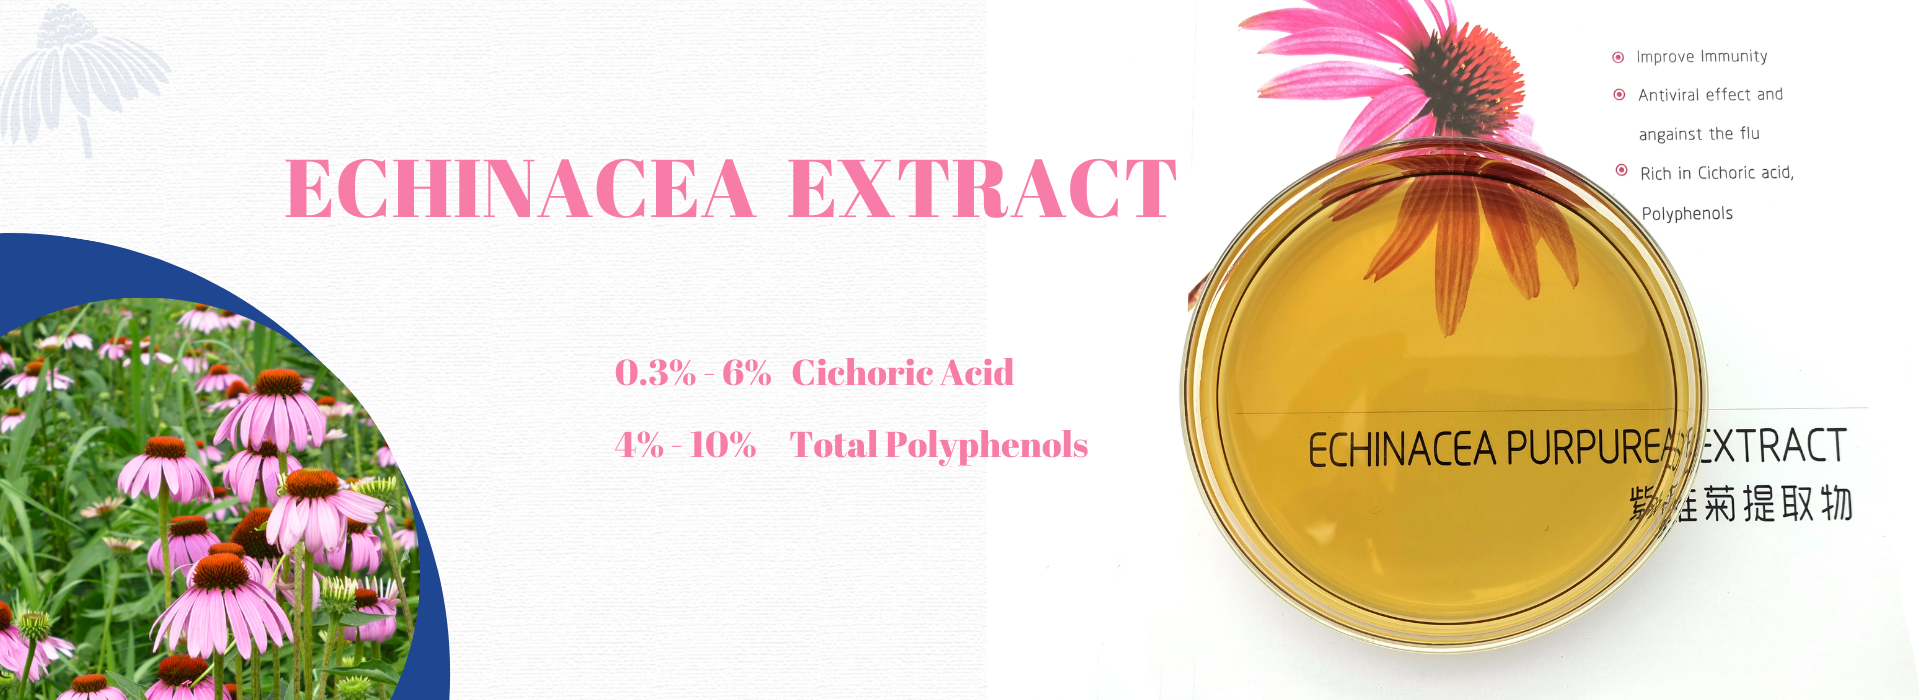 echinacea extract